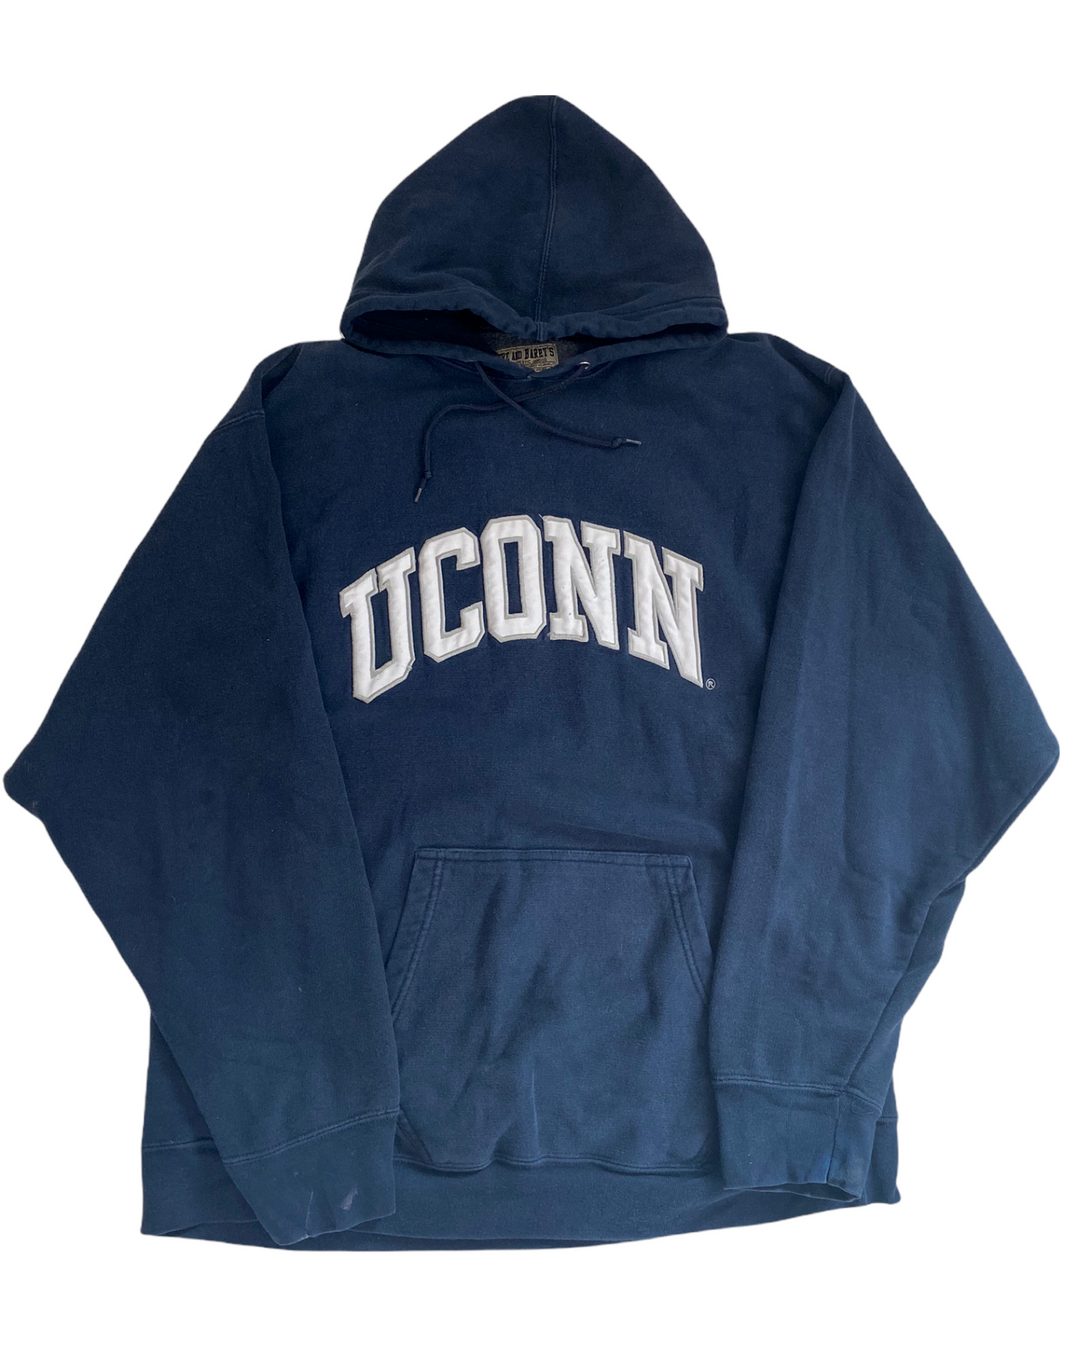 UConn Vintage Sweatshirt